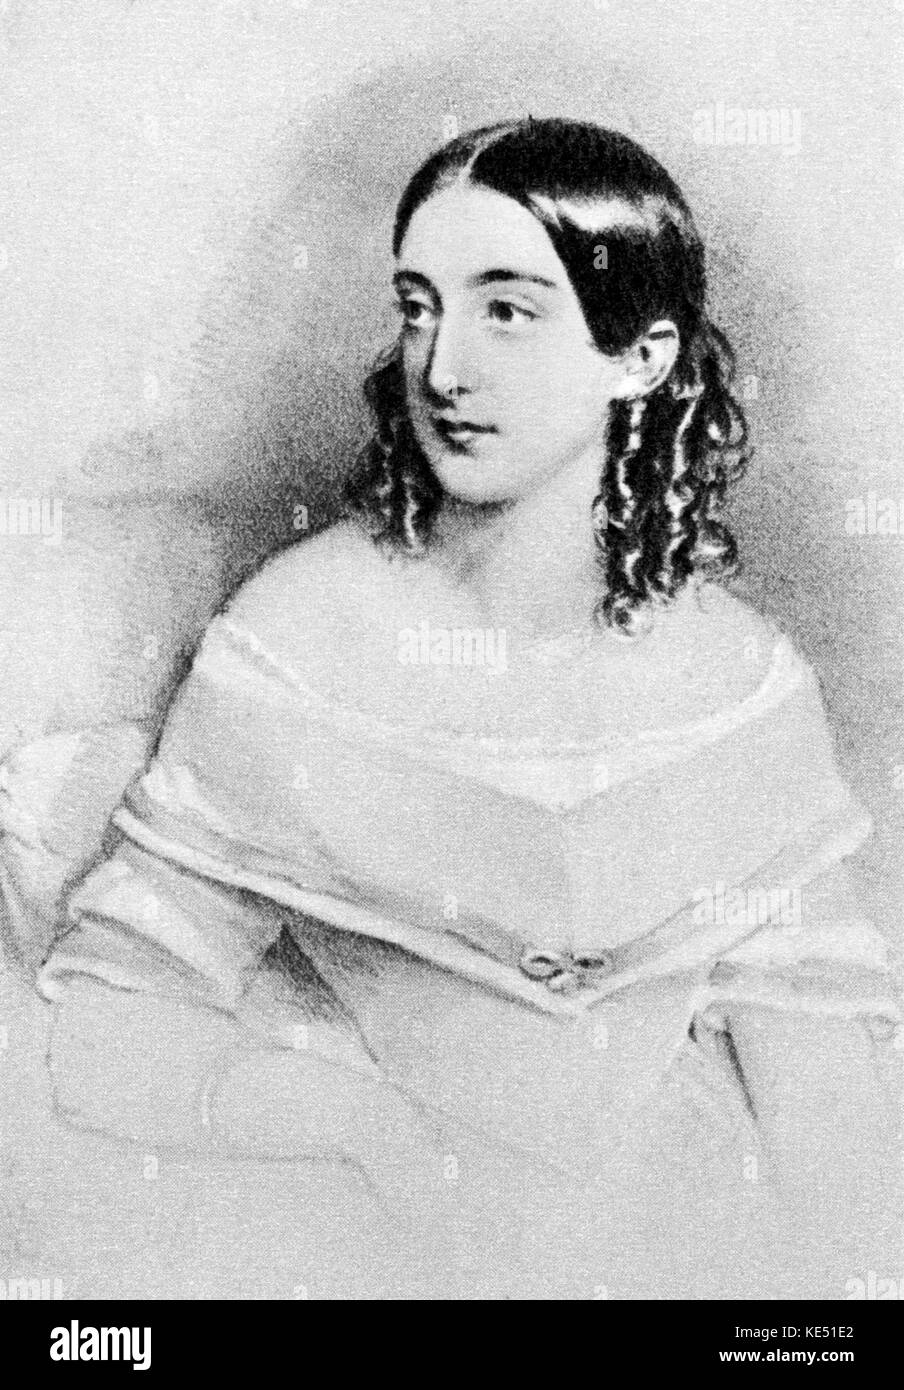 Erminia Frezzolini - Portrait der Italienische Sopranistin. Ständigen, stützte sich auf einen Stuhl. EF: 27. März 1818 - 5. November 1884. Sang in der ersten Aufführungen von Verdis I Lombardi und Giovanna d'Arco. Stockfoto